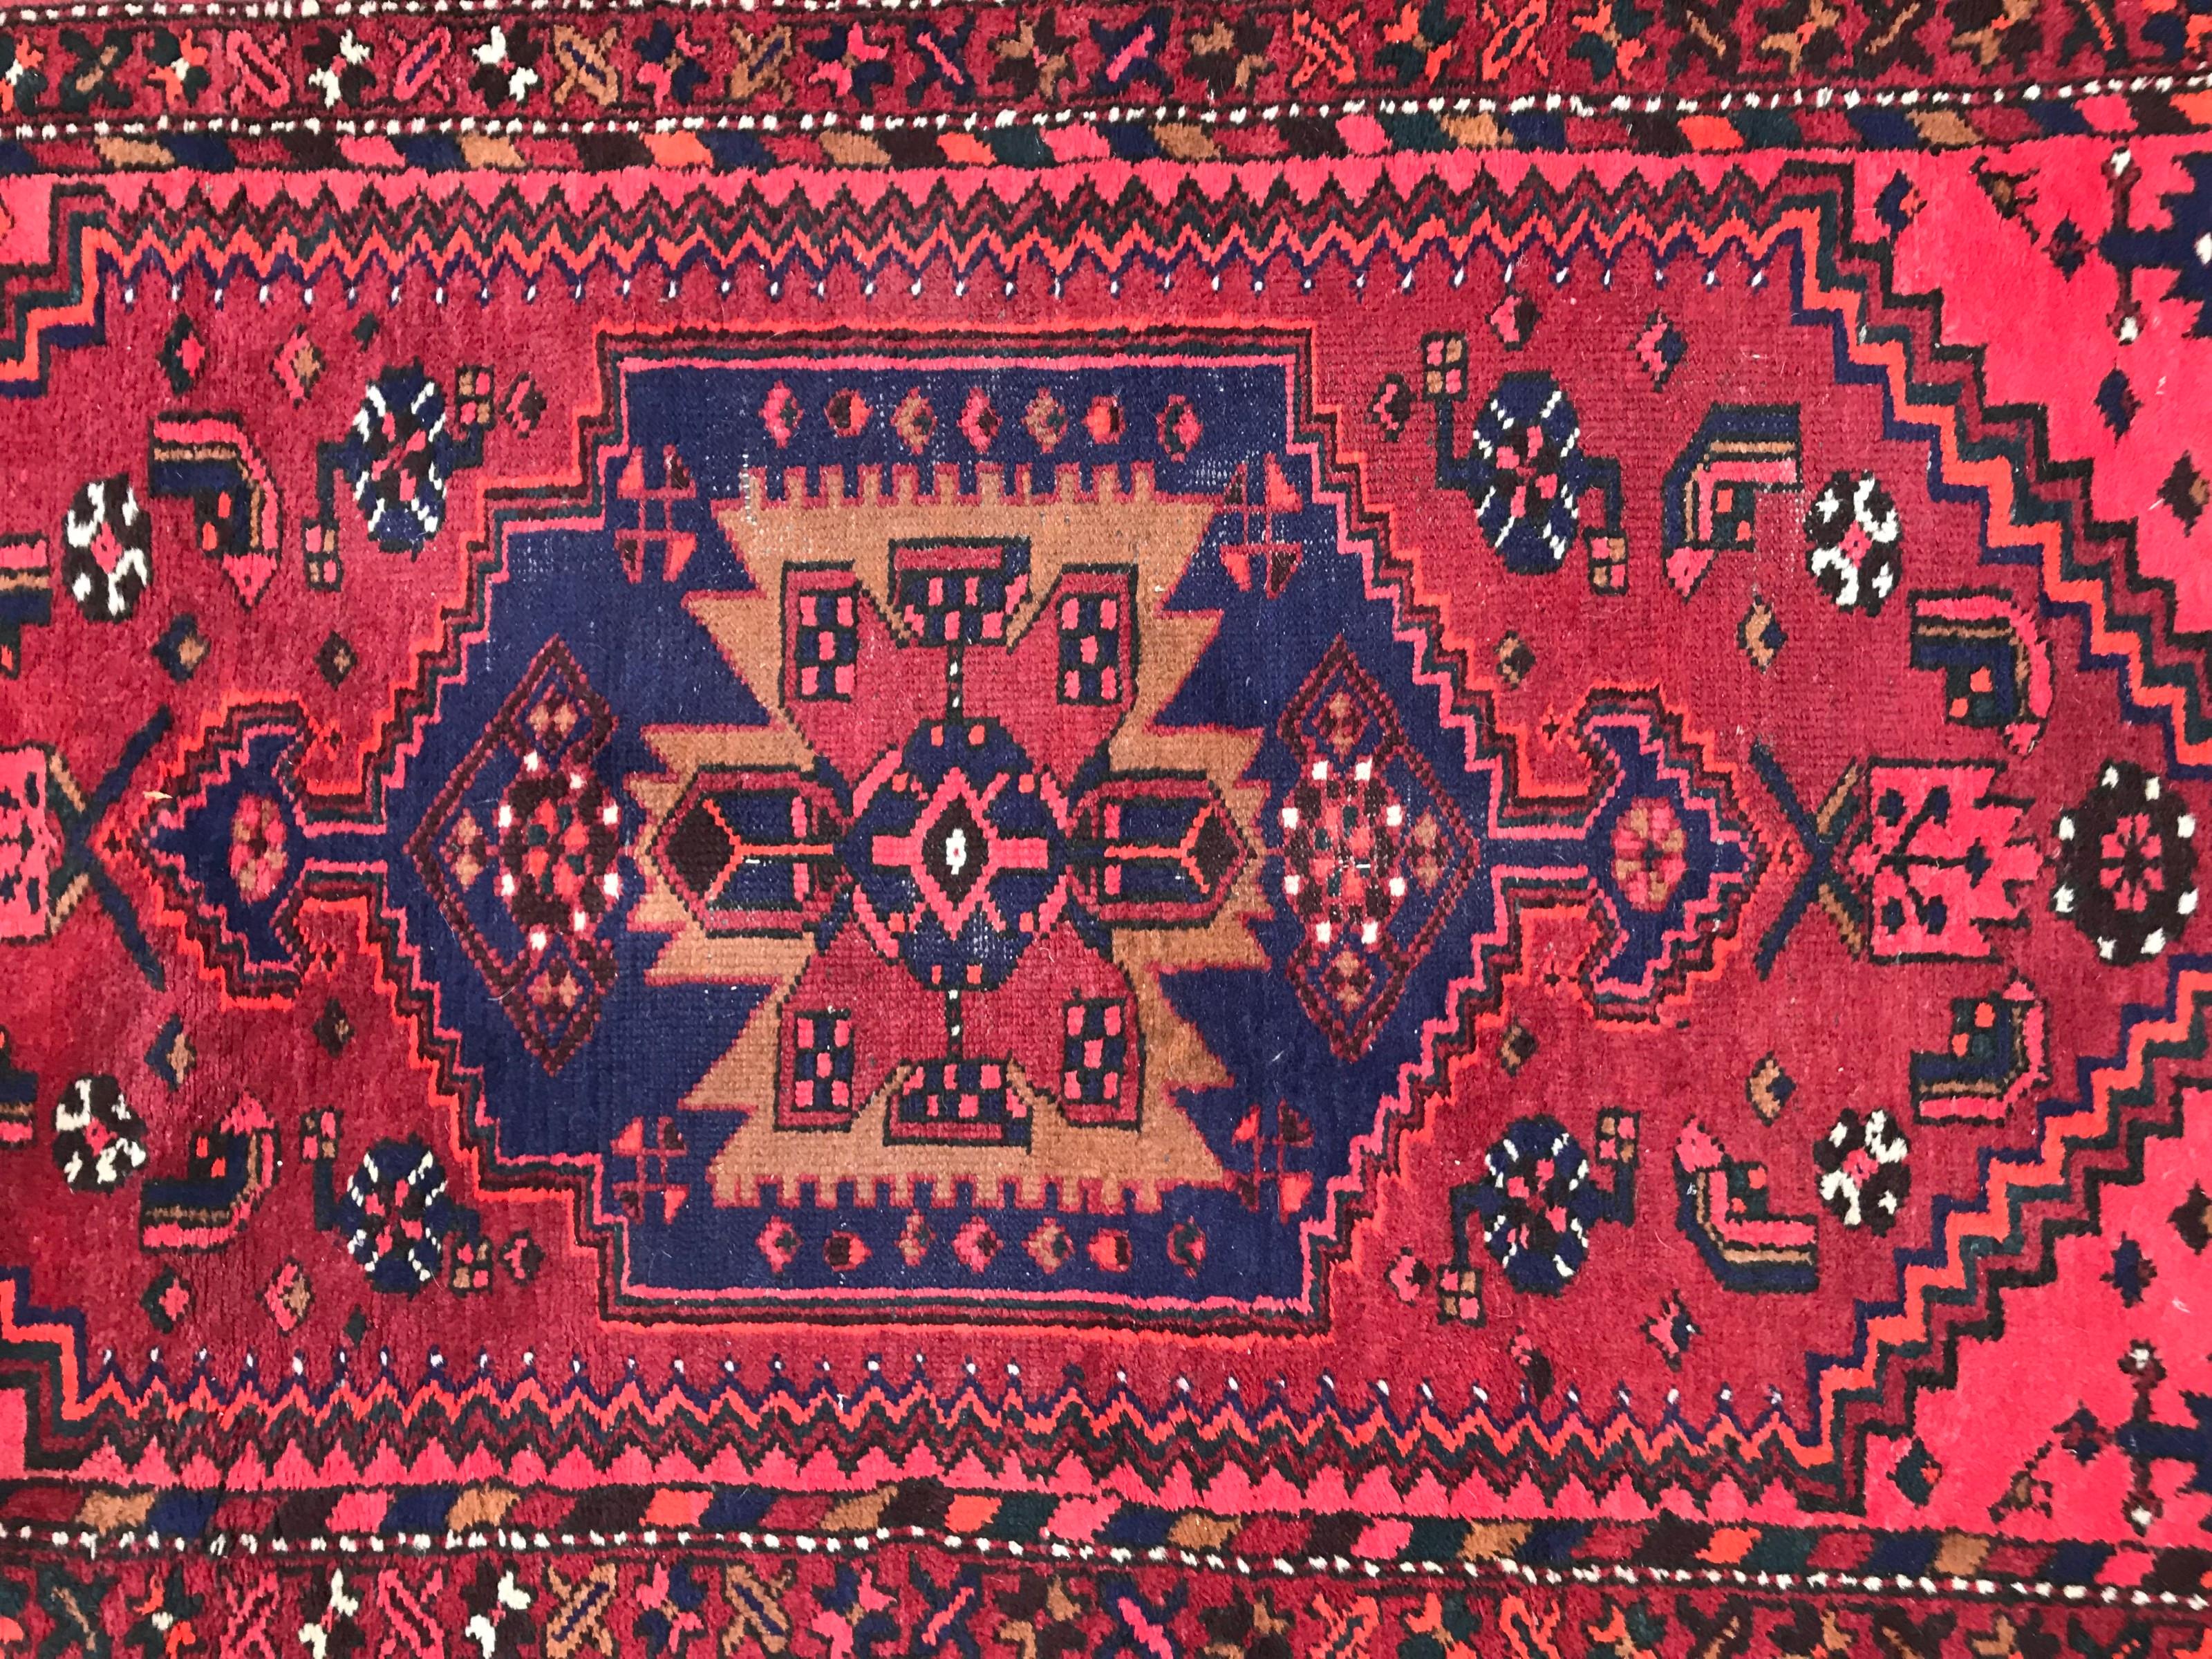 Joli tapis kurde du milieu du 20e siècle avec un beau design tribal et un champ rouge, rose, jaune, bleu et noir, entièrement noué à la main avec du velours de laine sur une base de coton.
Quelques usures 

✨✨✨
